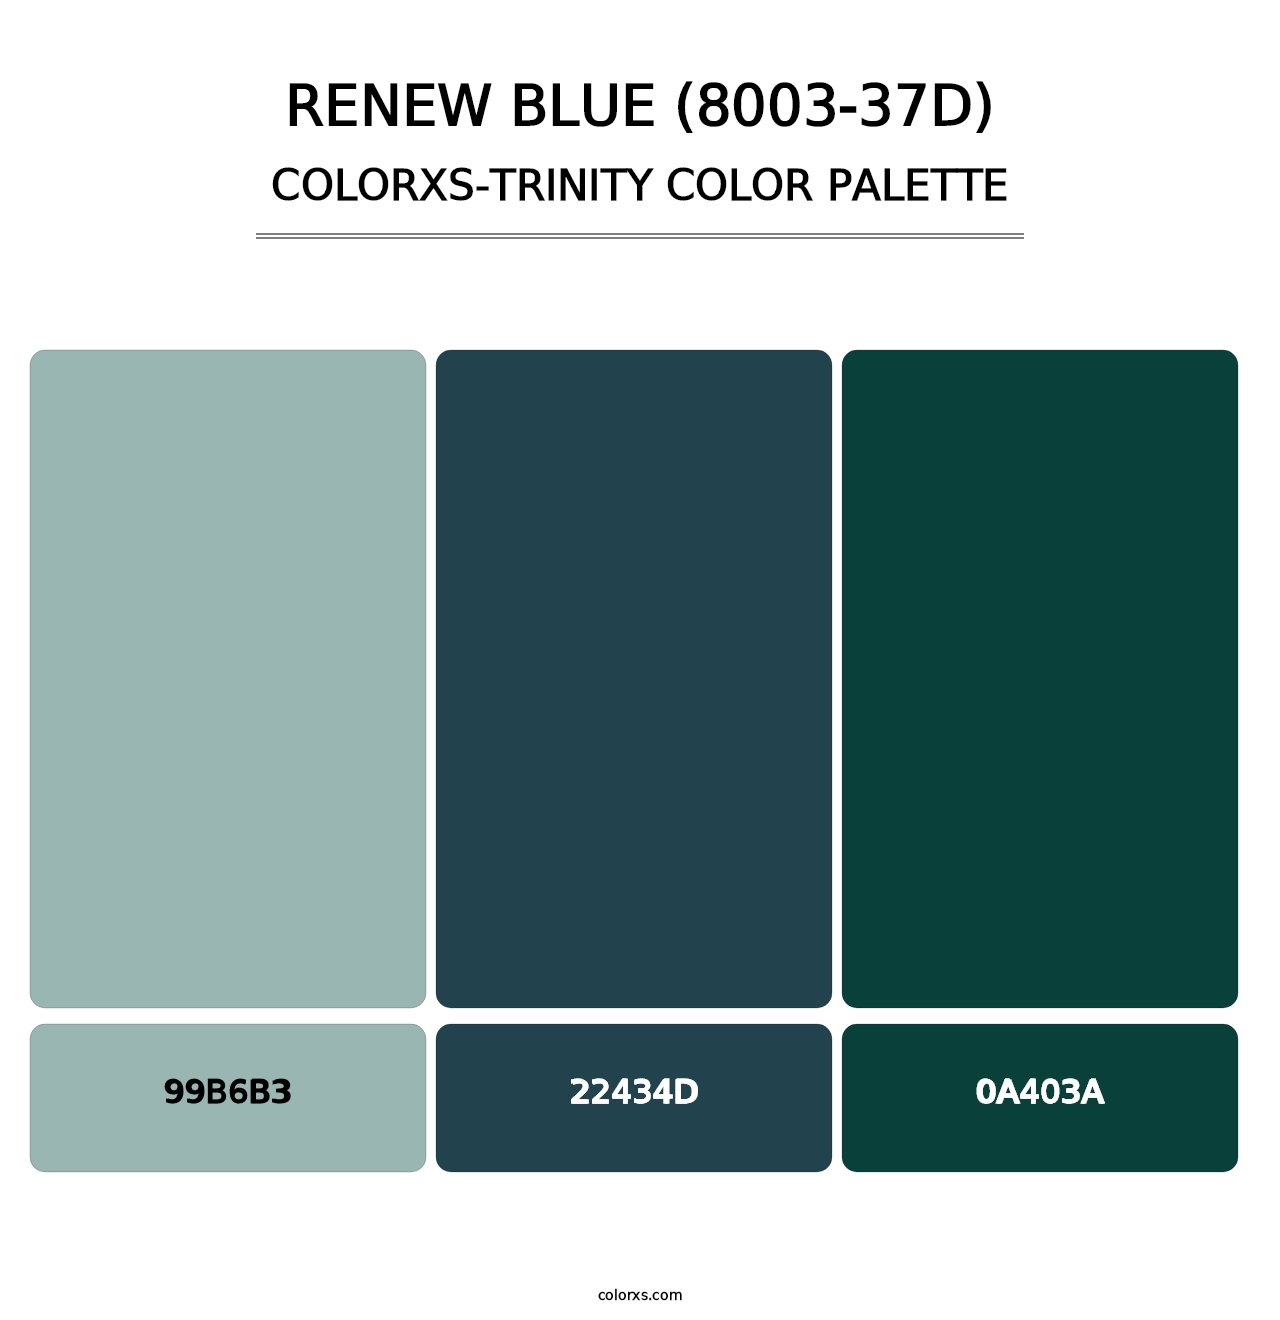 Renew Blue (8003-37D) - Colorxs Trinity Palette